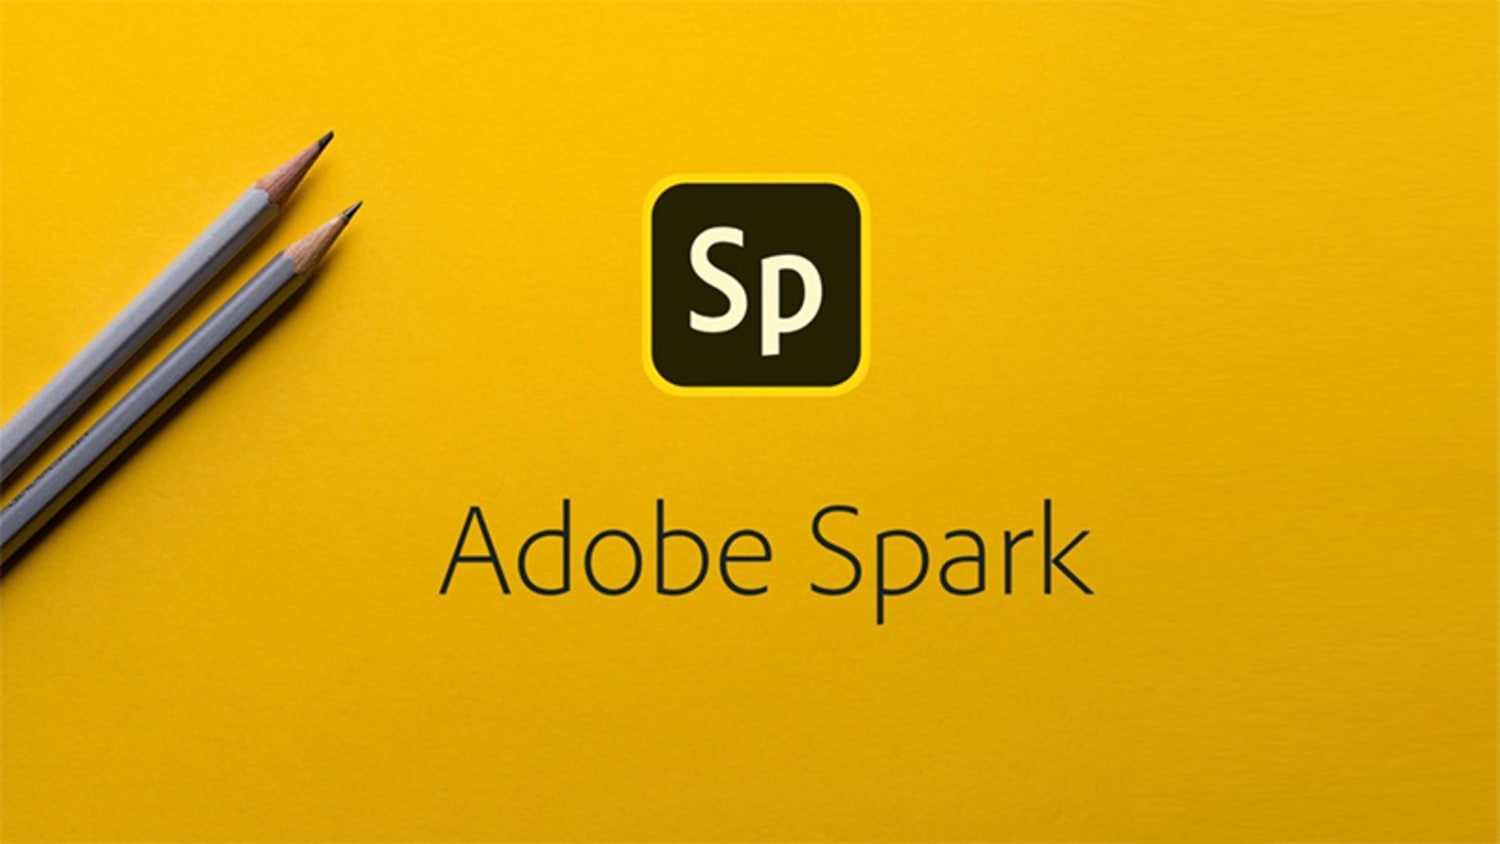 Adobe Spark - 10 sites para remover o fundo de imagens online